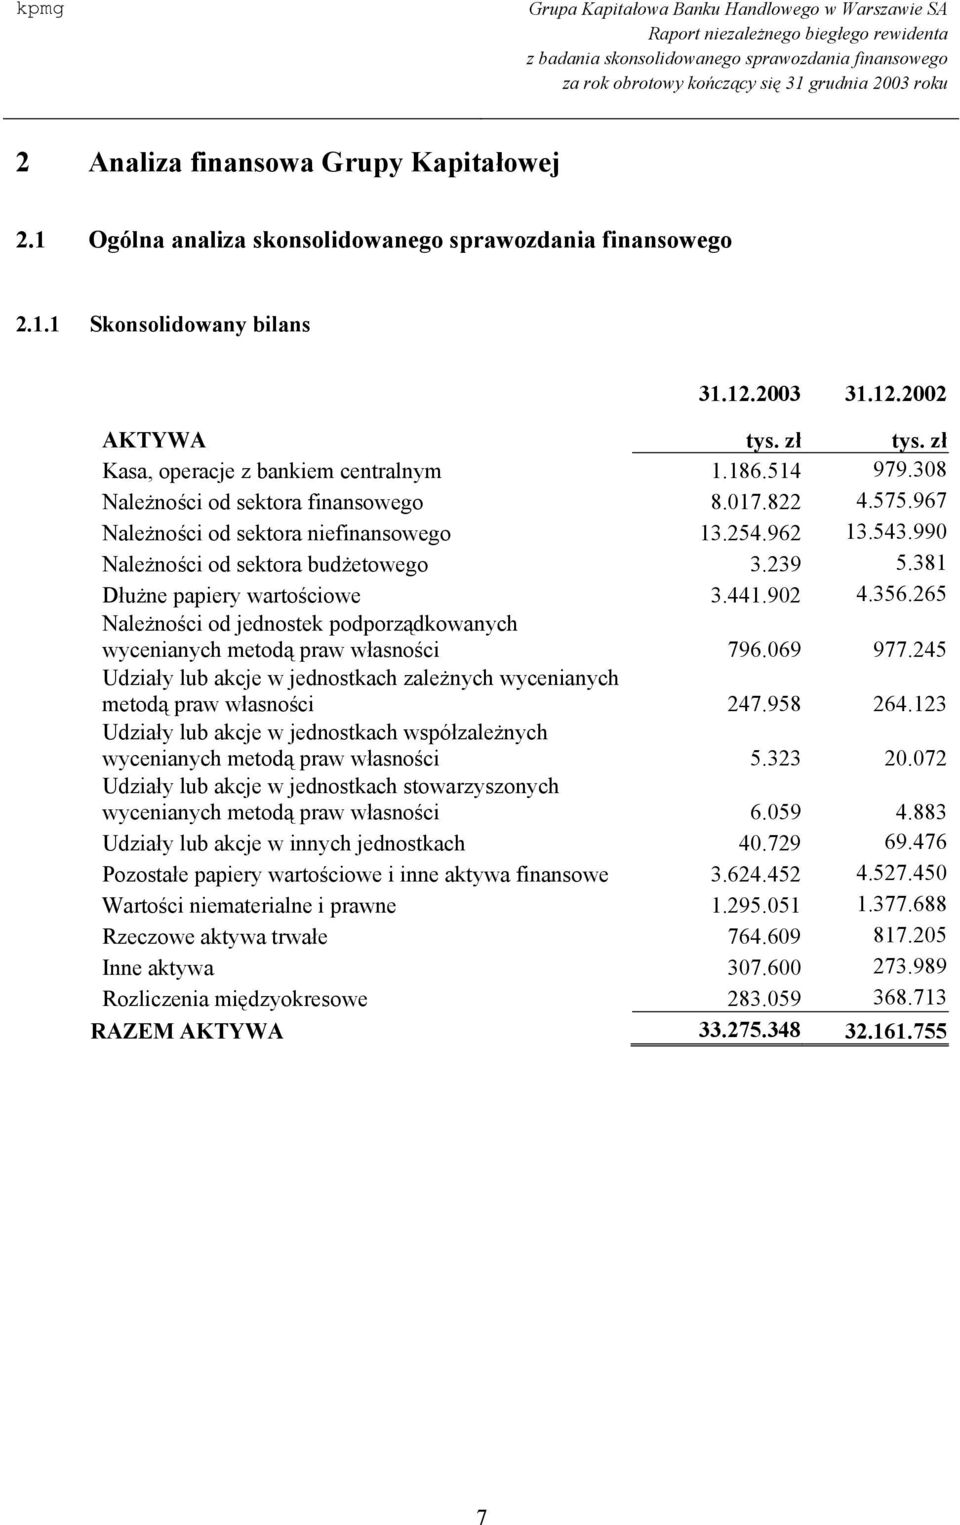 990 Należności od sektora budżetowego 3.239 5.381 Dłużne papiery wartościowe 3.441.902 4.356.265 Należności od jednostek podporządkowanych wycenianych metodą praw własności 796.069 977.